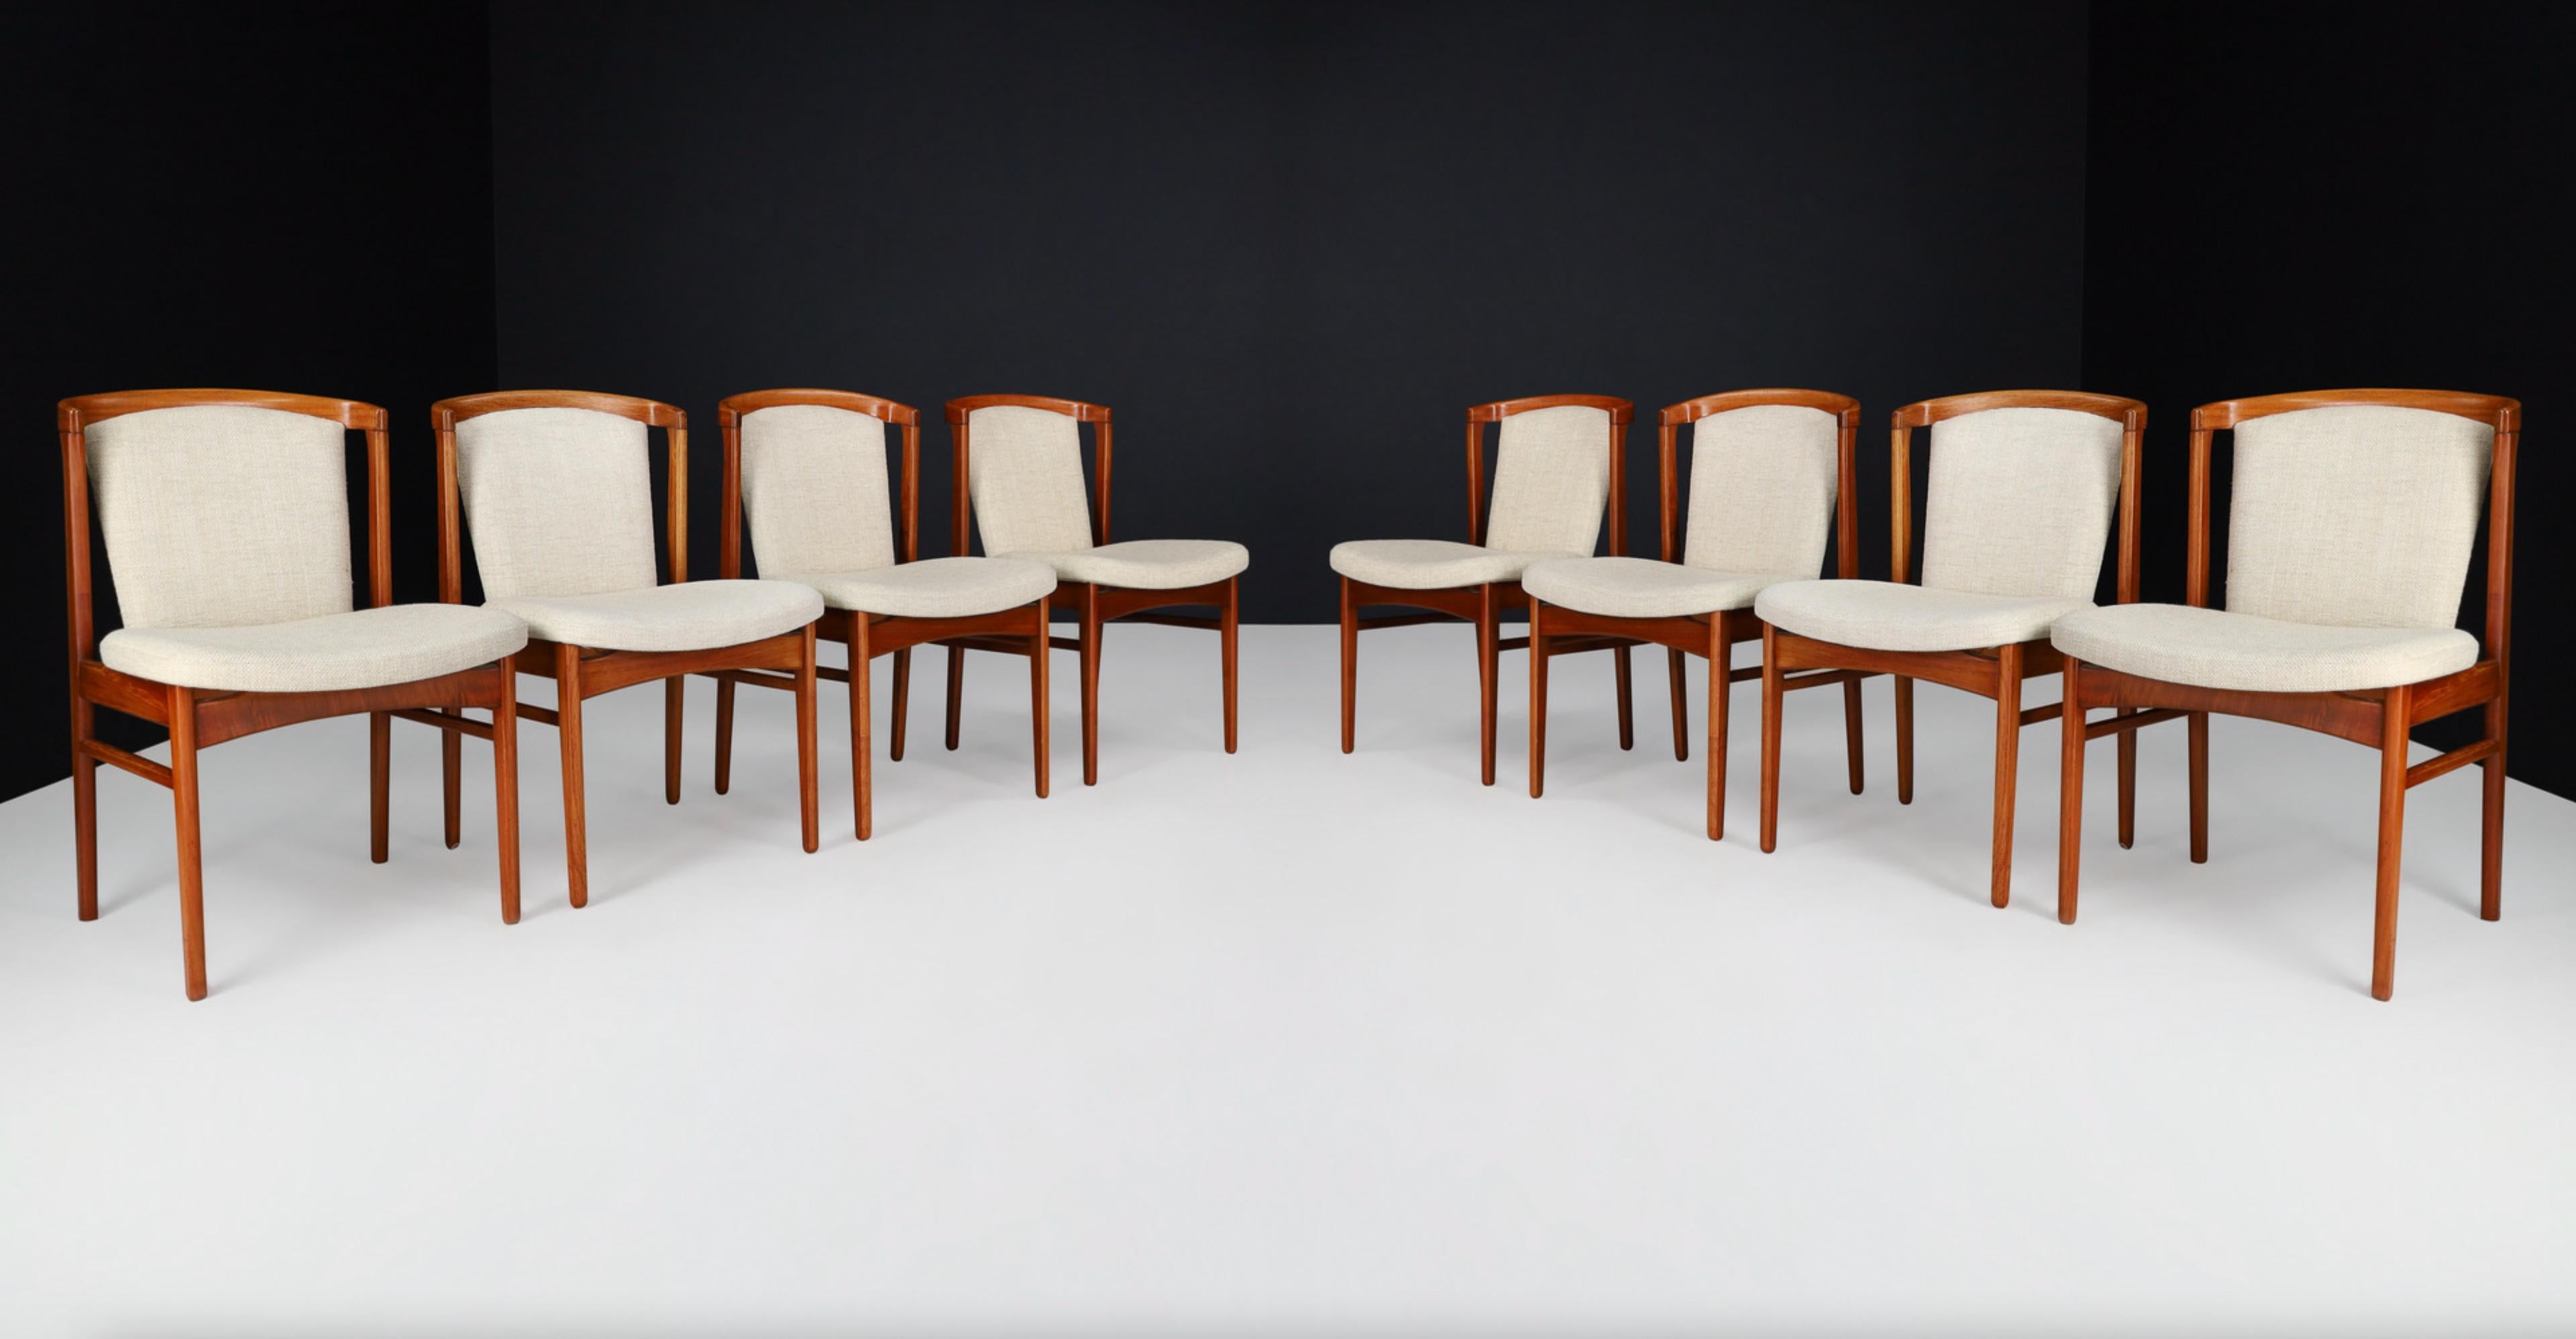 Chaises de salle à manger par Erik Buch pour Orum Mobler, Danemark, années 1960

Aussi rare qu'esthétiquement sensationnel, cet ensemble de huit chaises de salle à manger d'Erik Buch pour Orum Mobler est dans un état vintage 100% original.